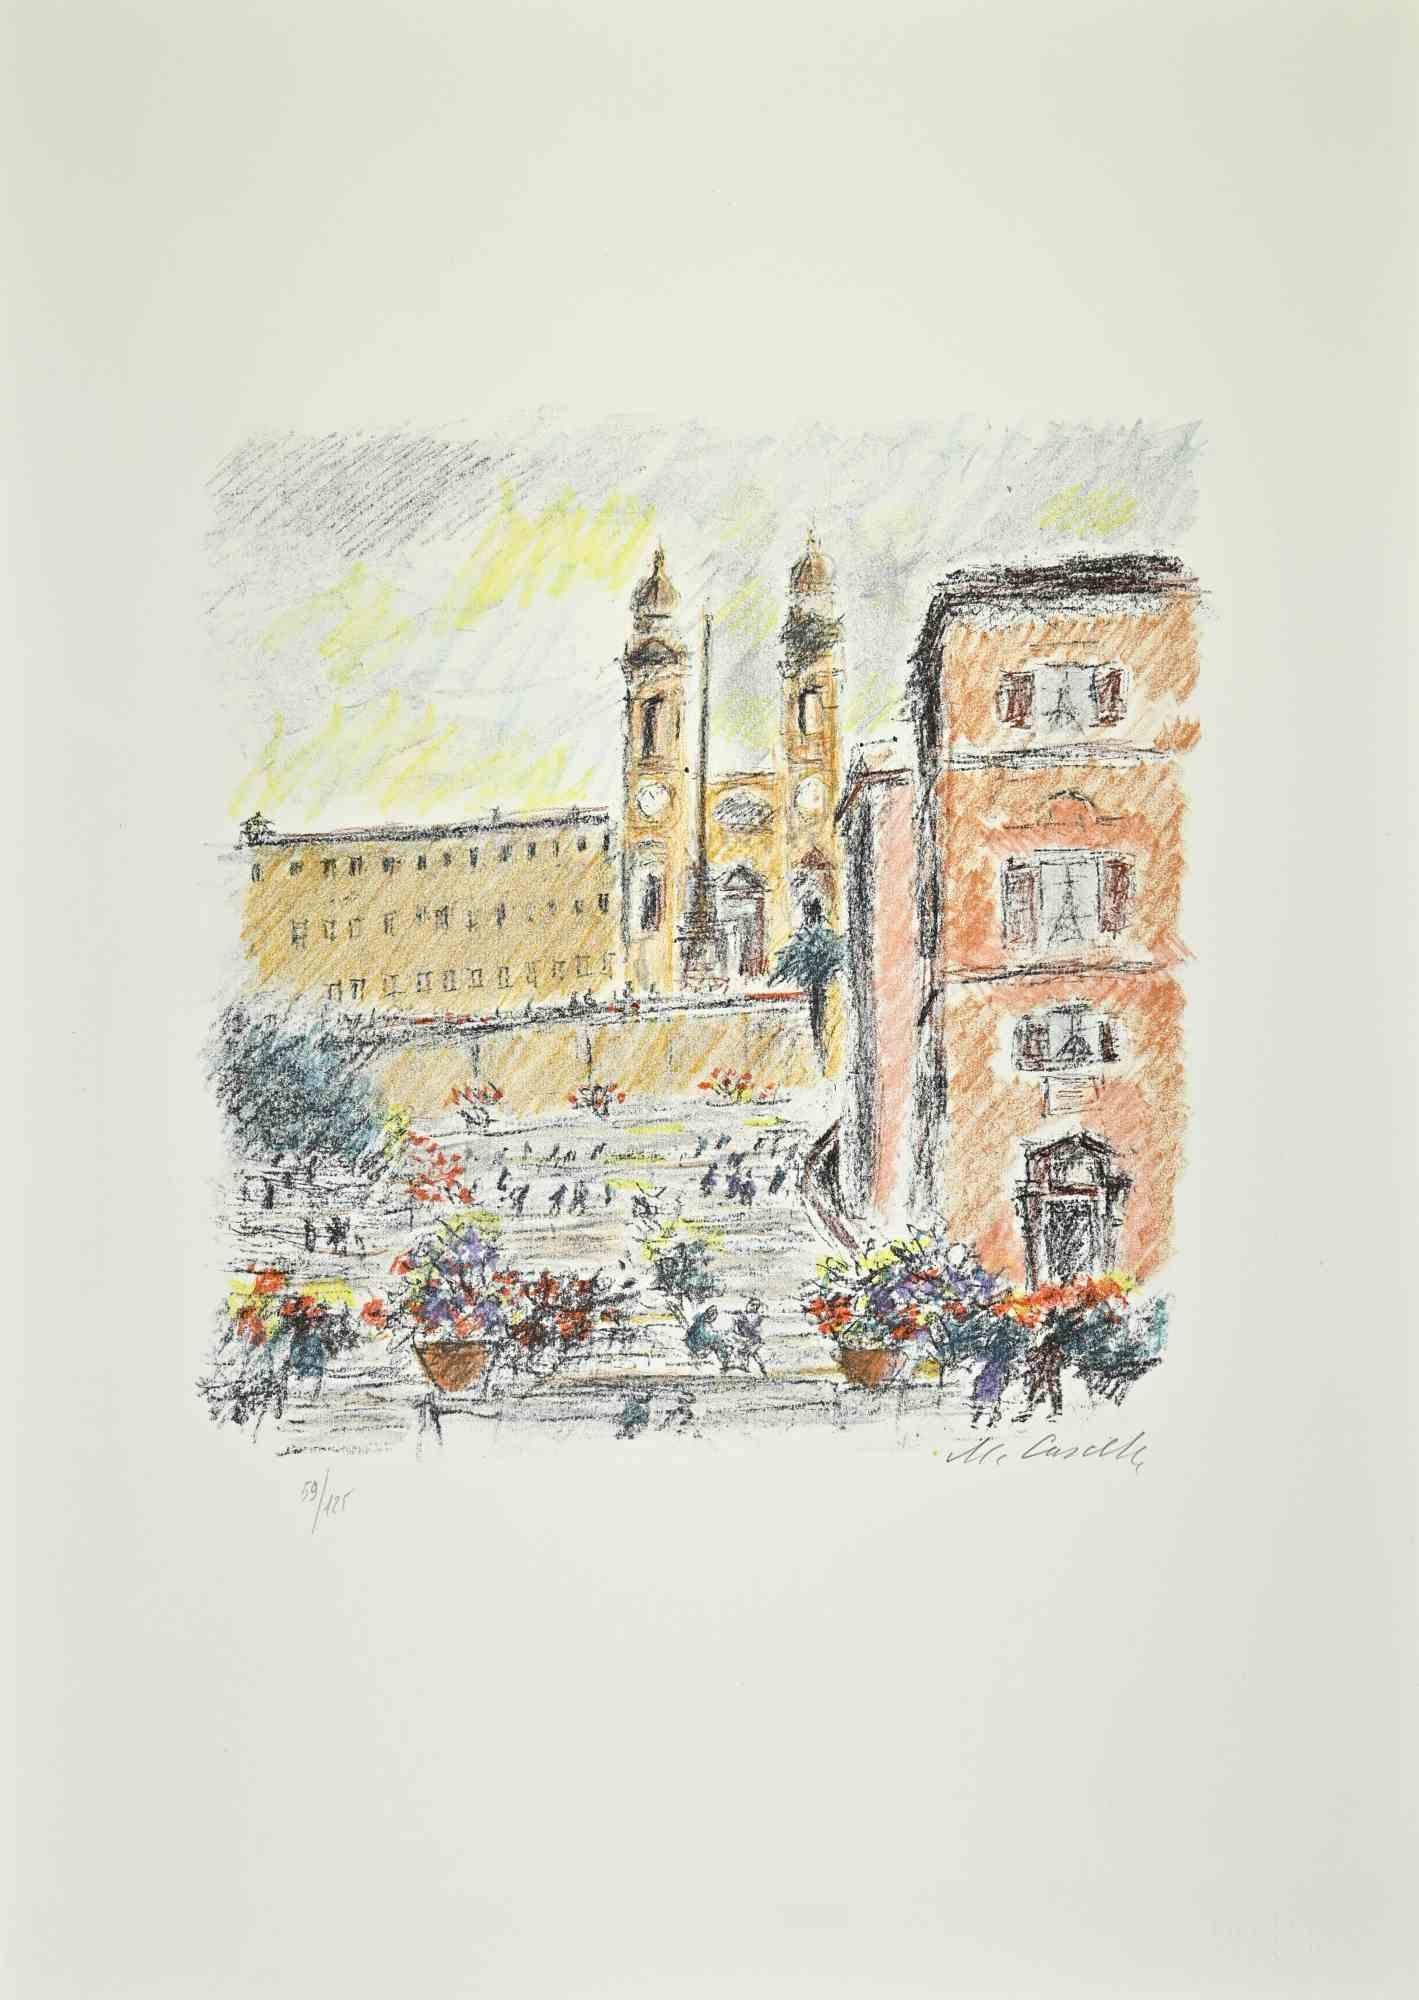 La Piazza di Spagna est une œuvre d'art réalisée en 1979 par l'artiste italien Michele Cascella.

Lithographie en couleurs sur papier du Portfolio "Landscape", 1979, avec six lithographies originales et les poèmes de Franco Simongini intitulés